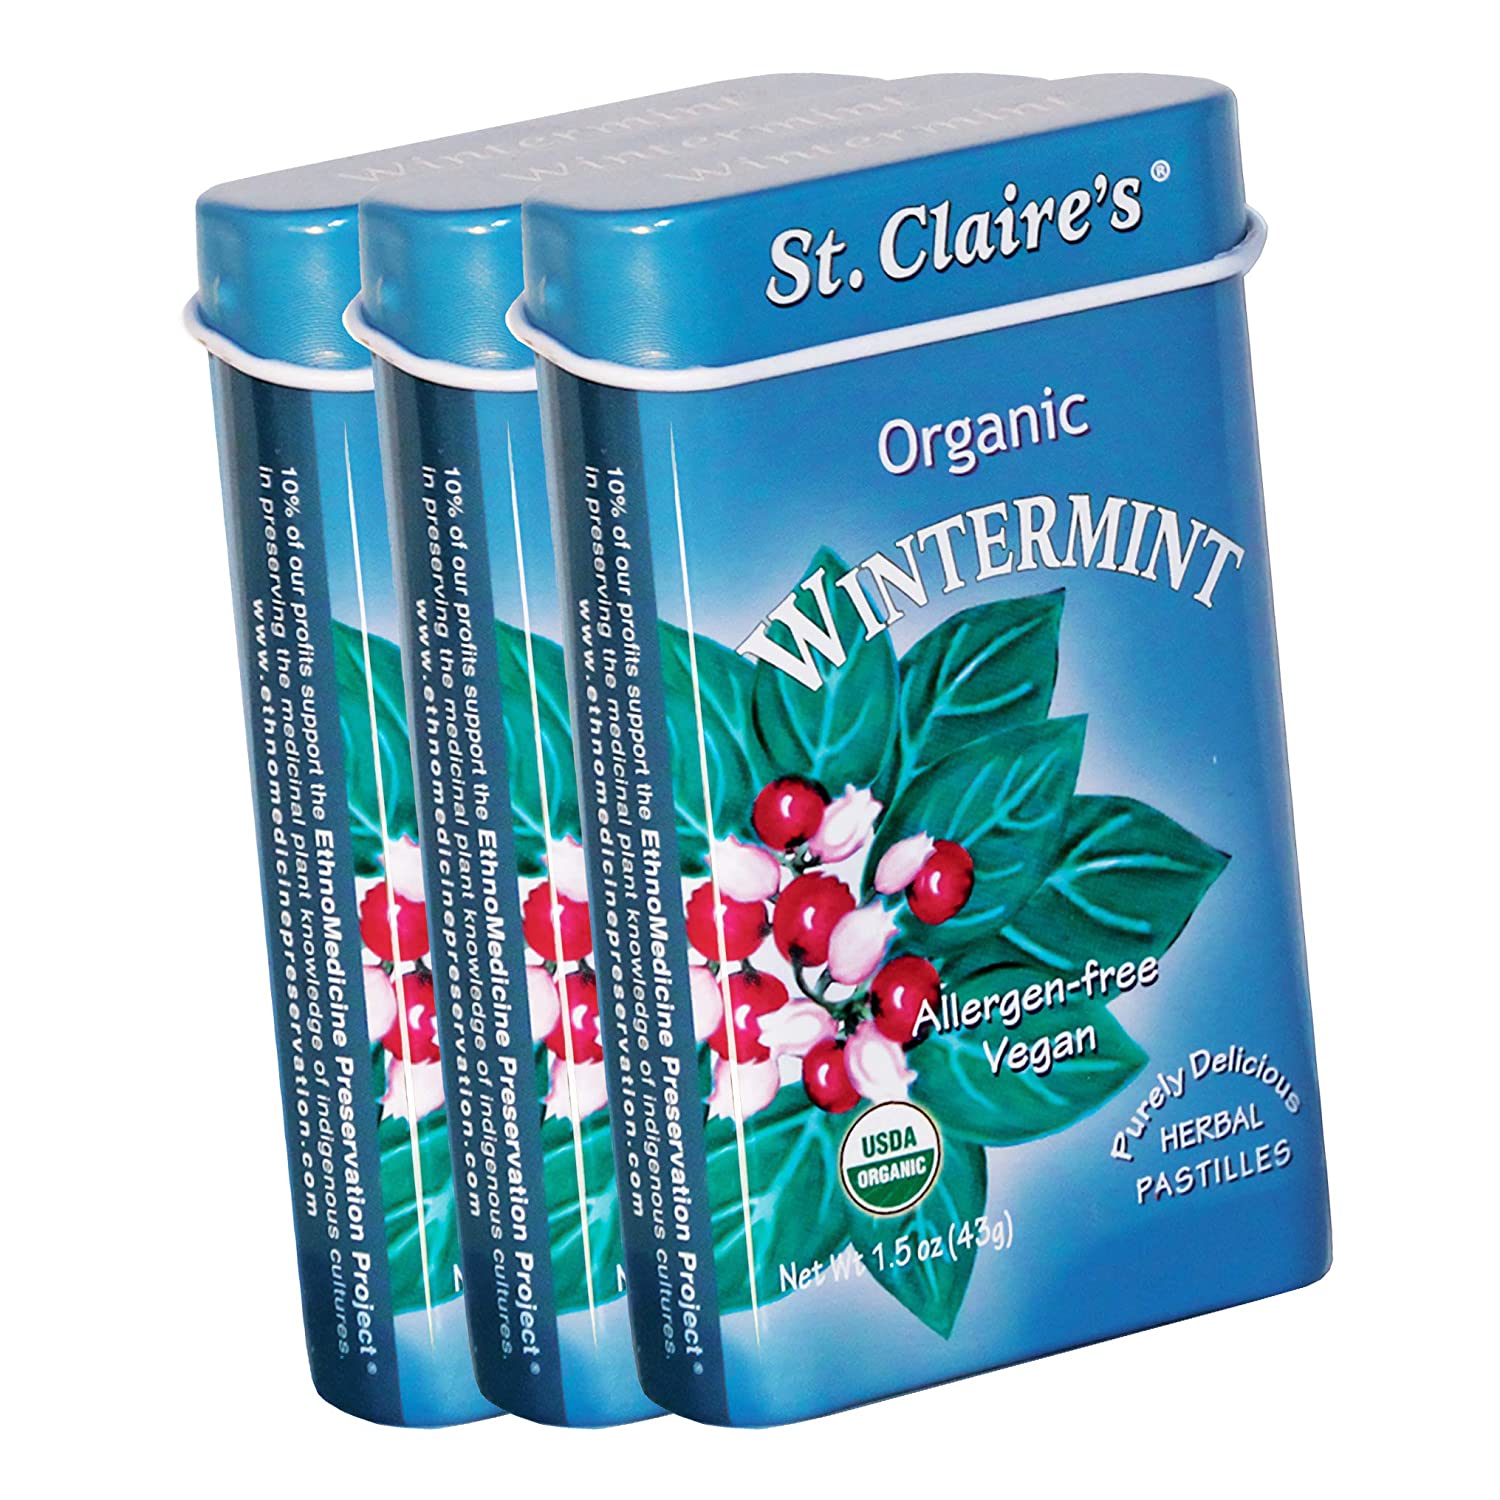 St. Claire’s Organic Herbal Pastilles Mints, 135-Piece